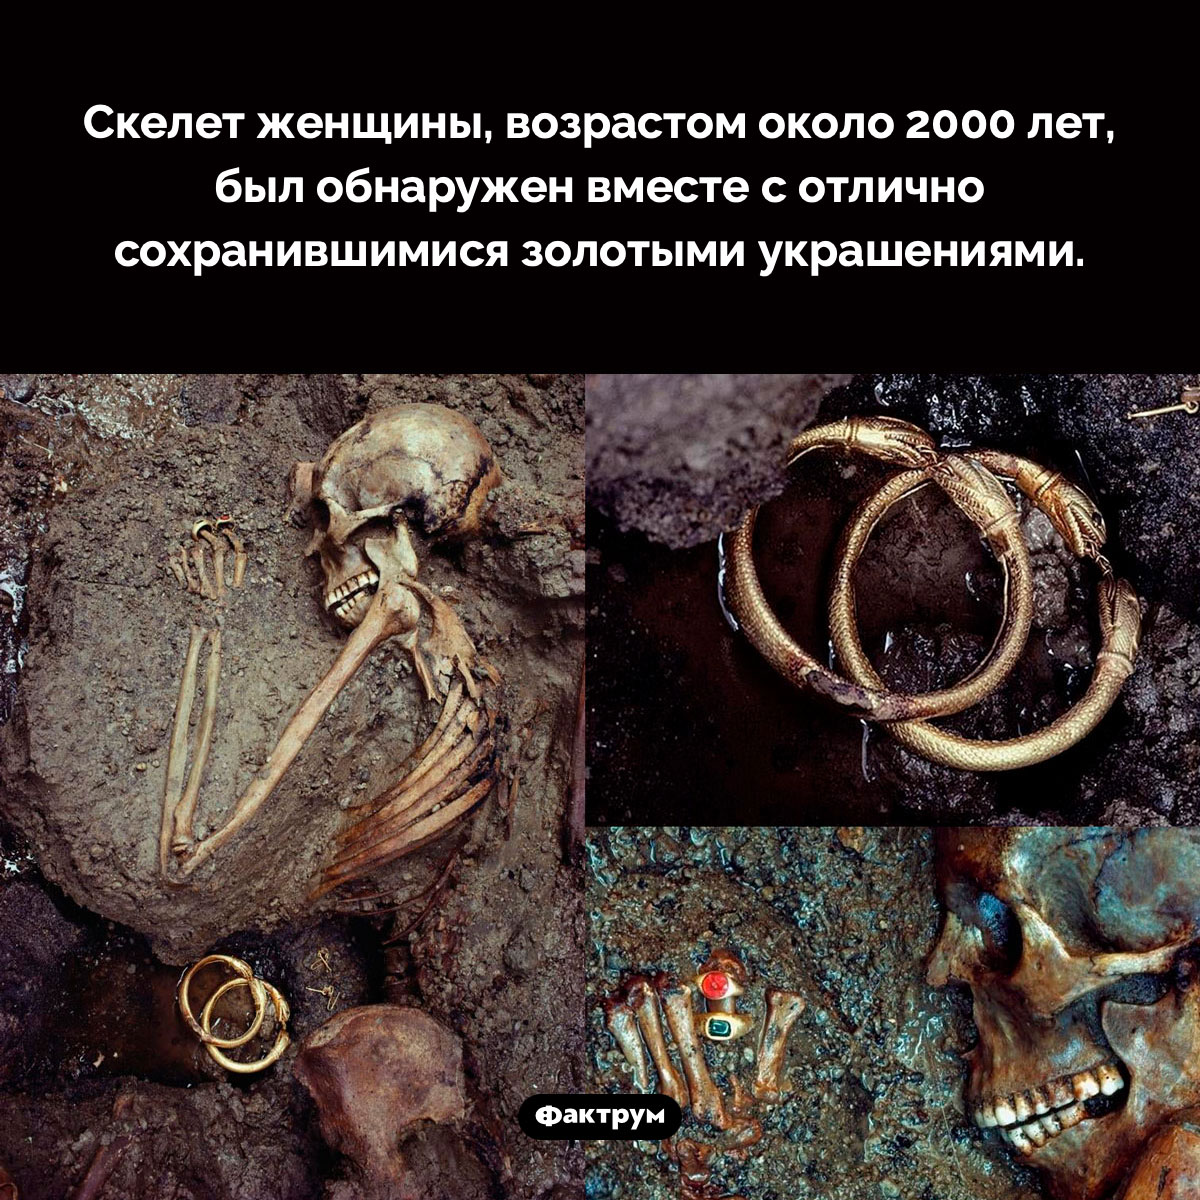 Леди с кольцами. Скелет женщины, возрастом около 2000 лет, был обнаружен вместе с отлично сохранившимися золотыми украшениями.